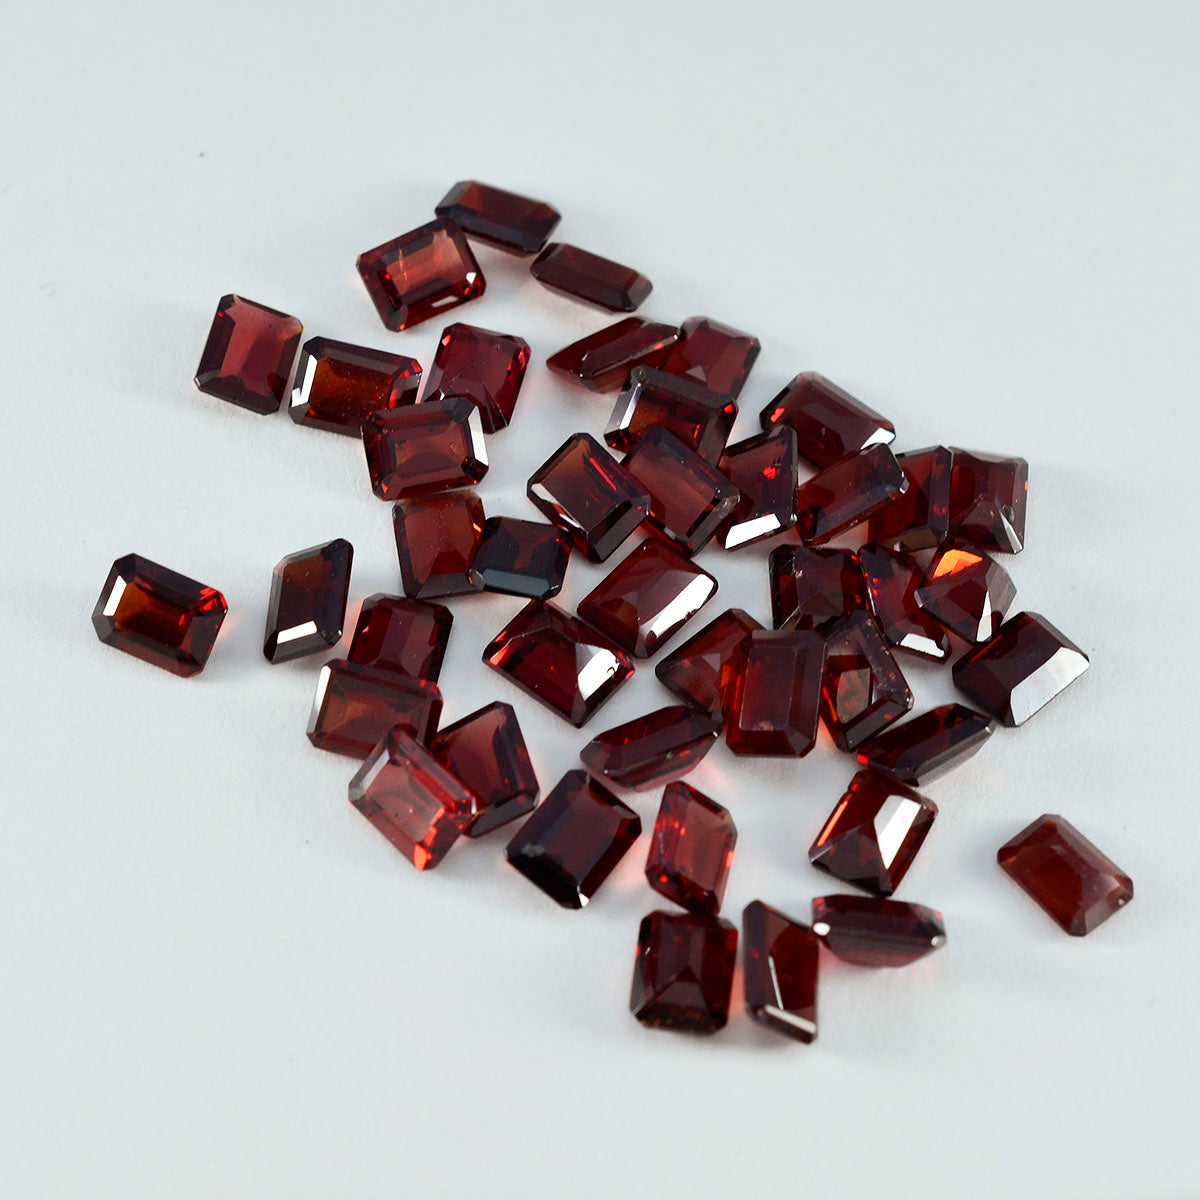 Riyogems 1 pieza de granate rojo natural facetado de 0.157 x 0.236 in, forma octágono, piedra preciosa de calidad A+1